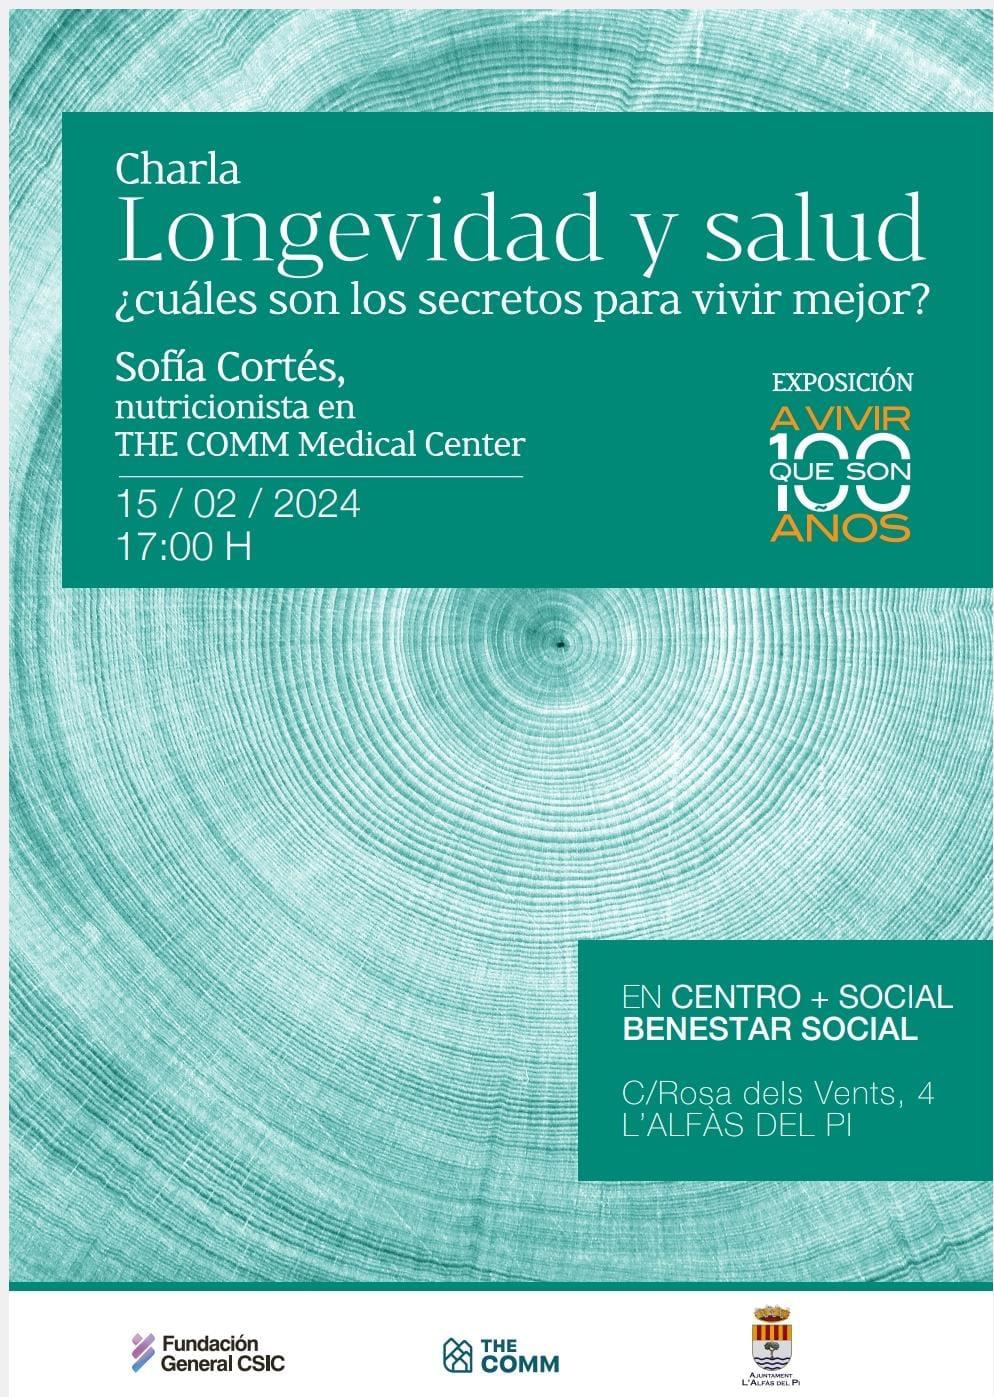 Interesante charla sobre longevidad y salud mañana jueves en el Centro L’Alfàs + Social